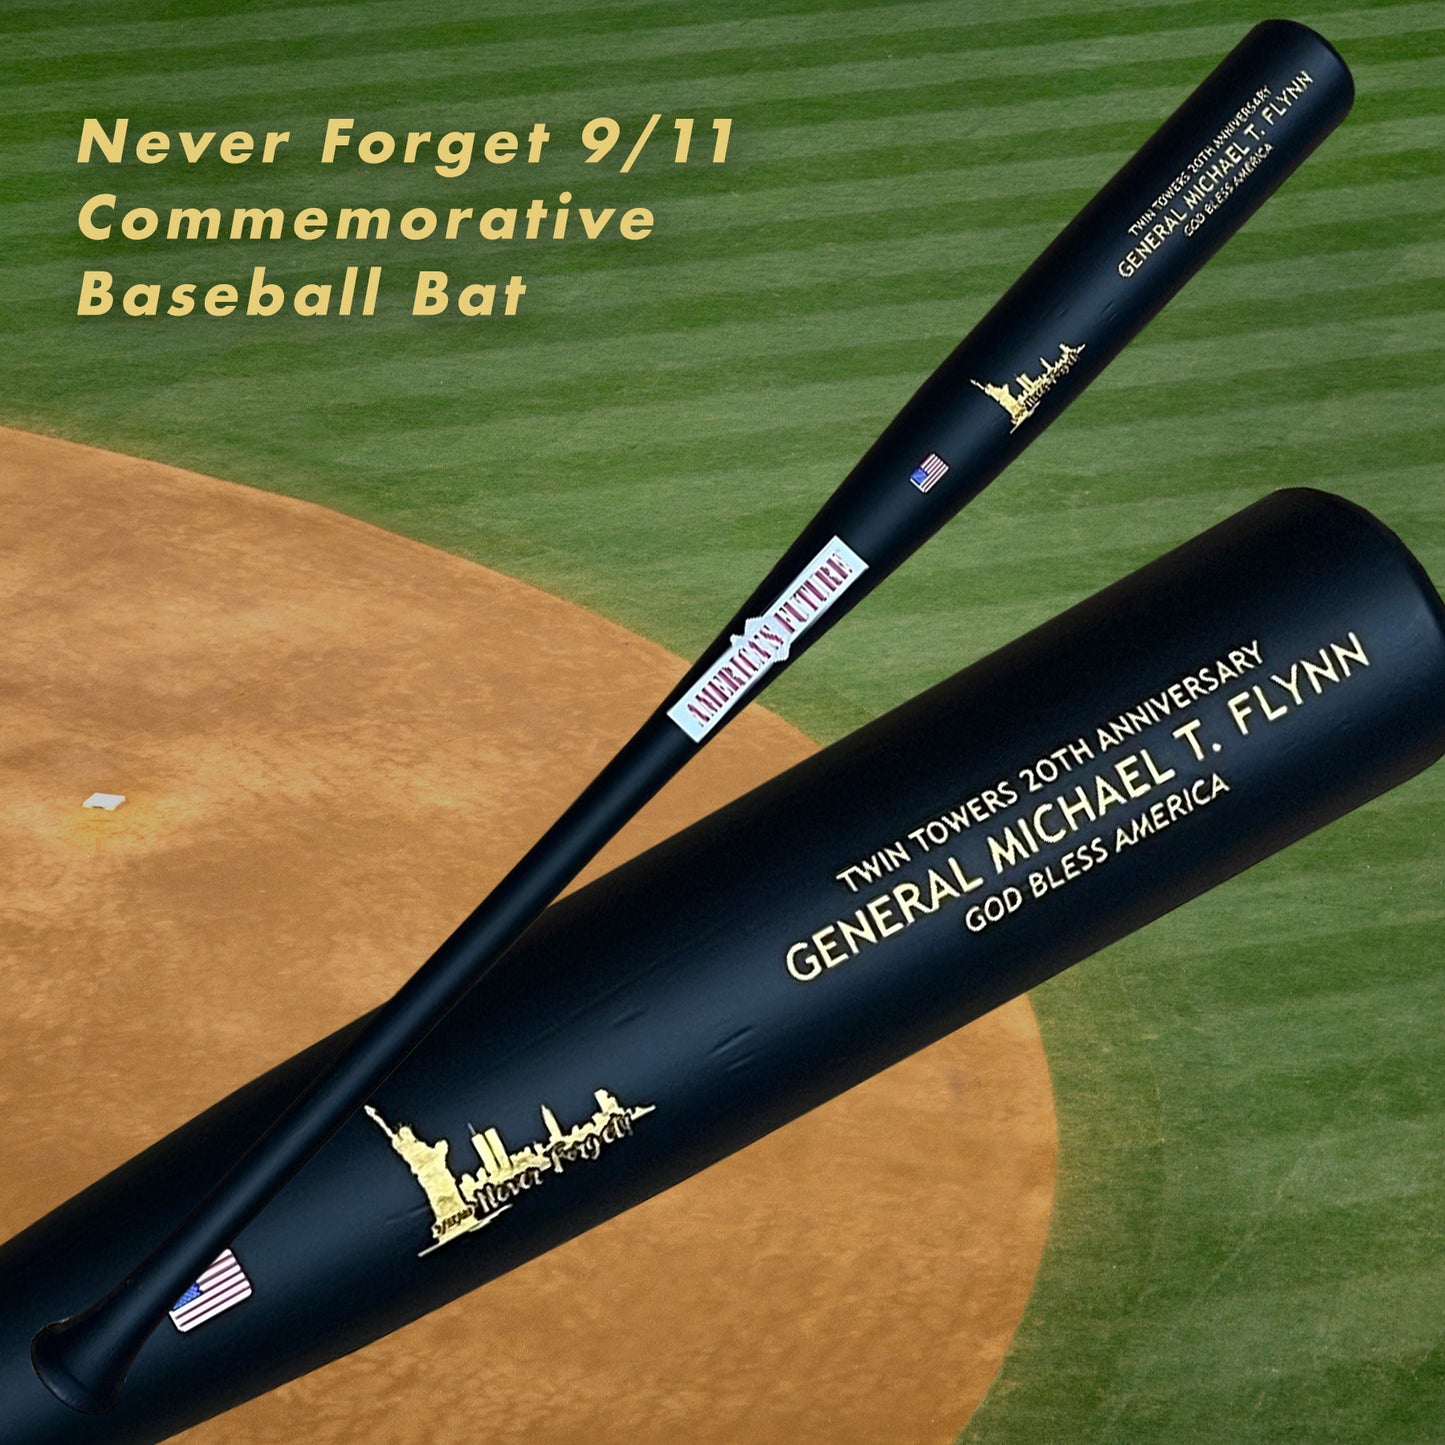 General Flynn Baseball Bats